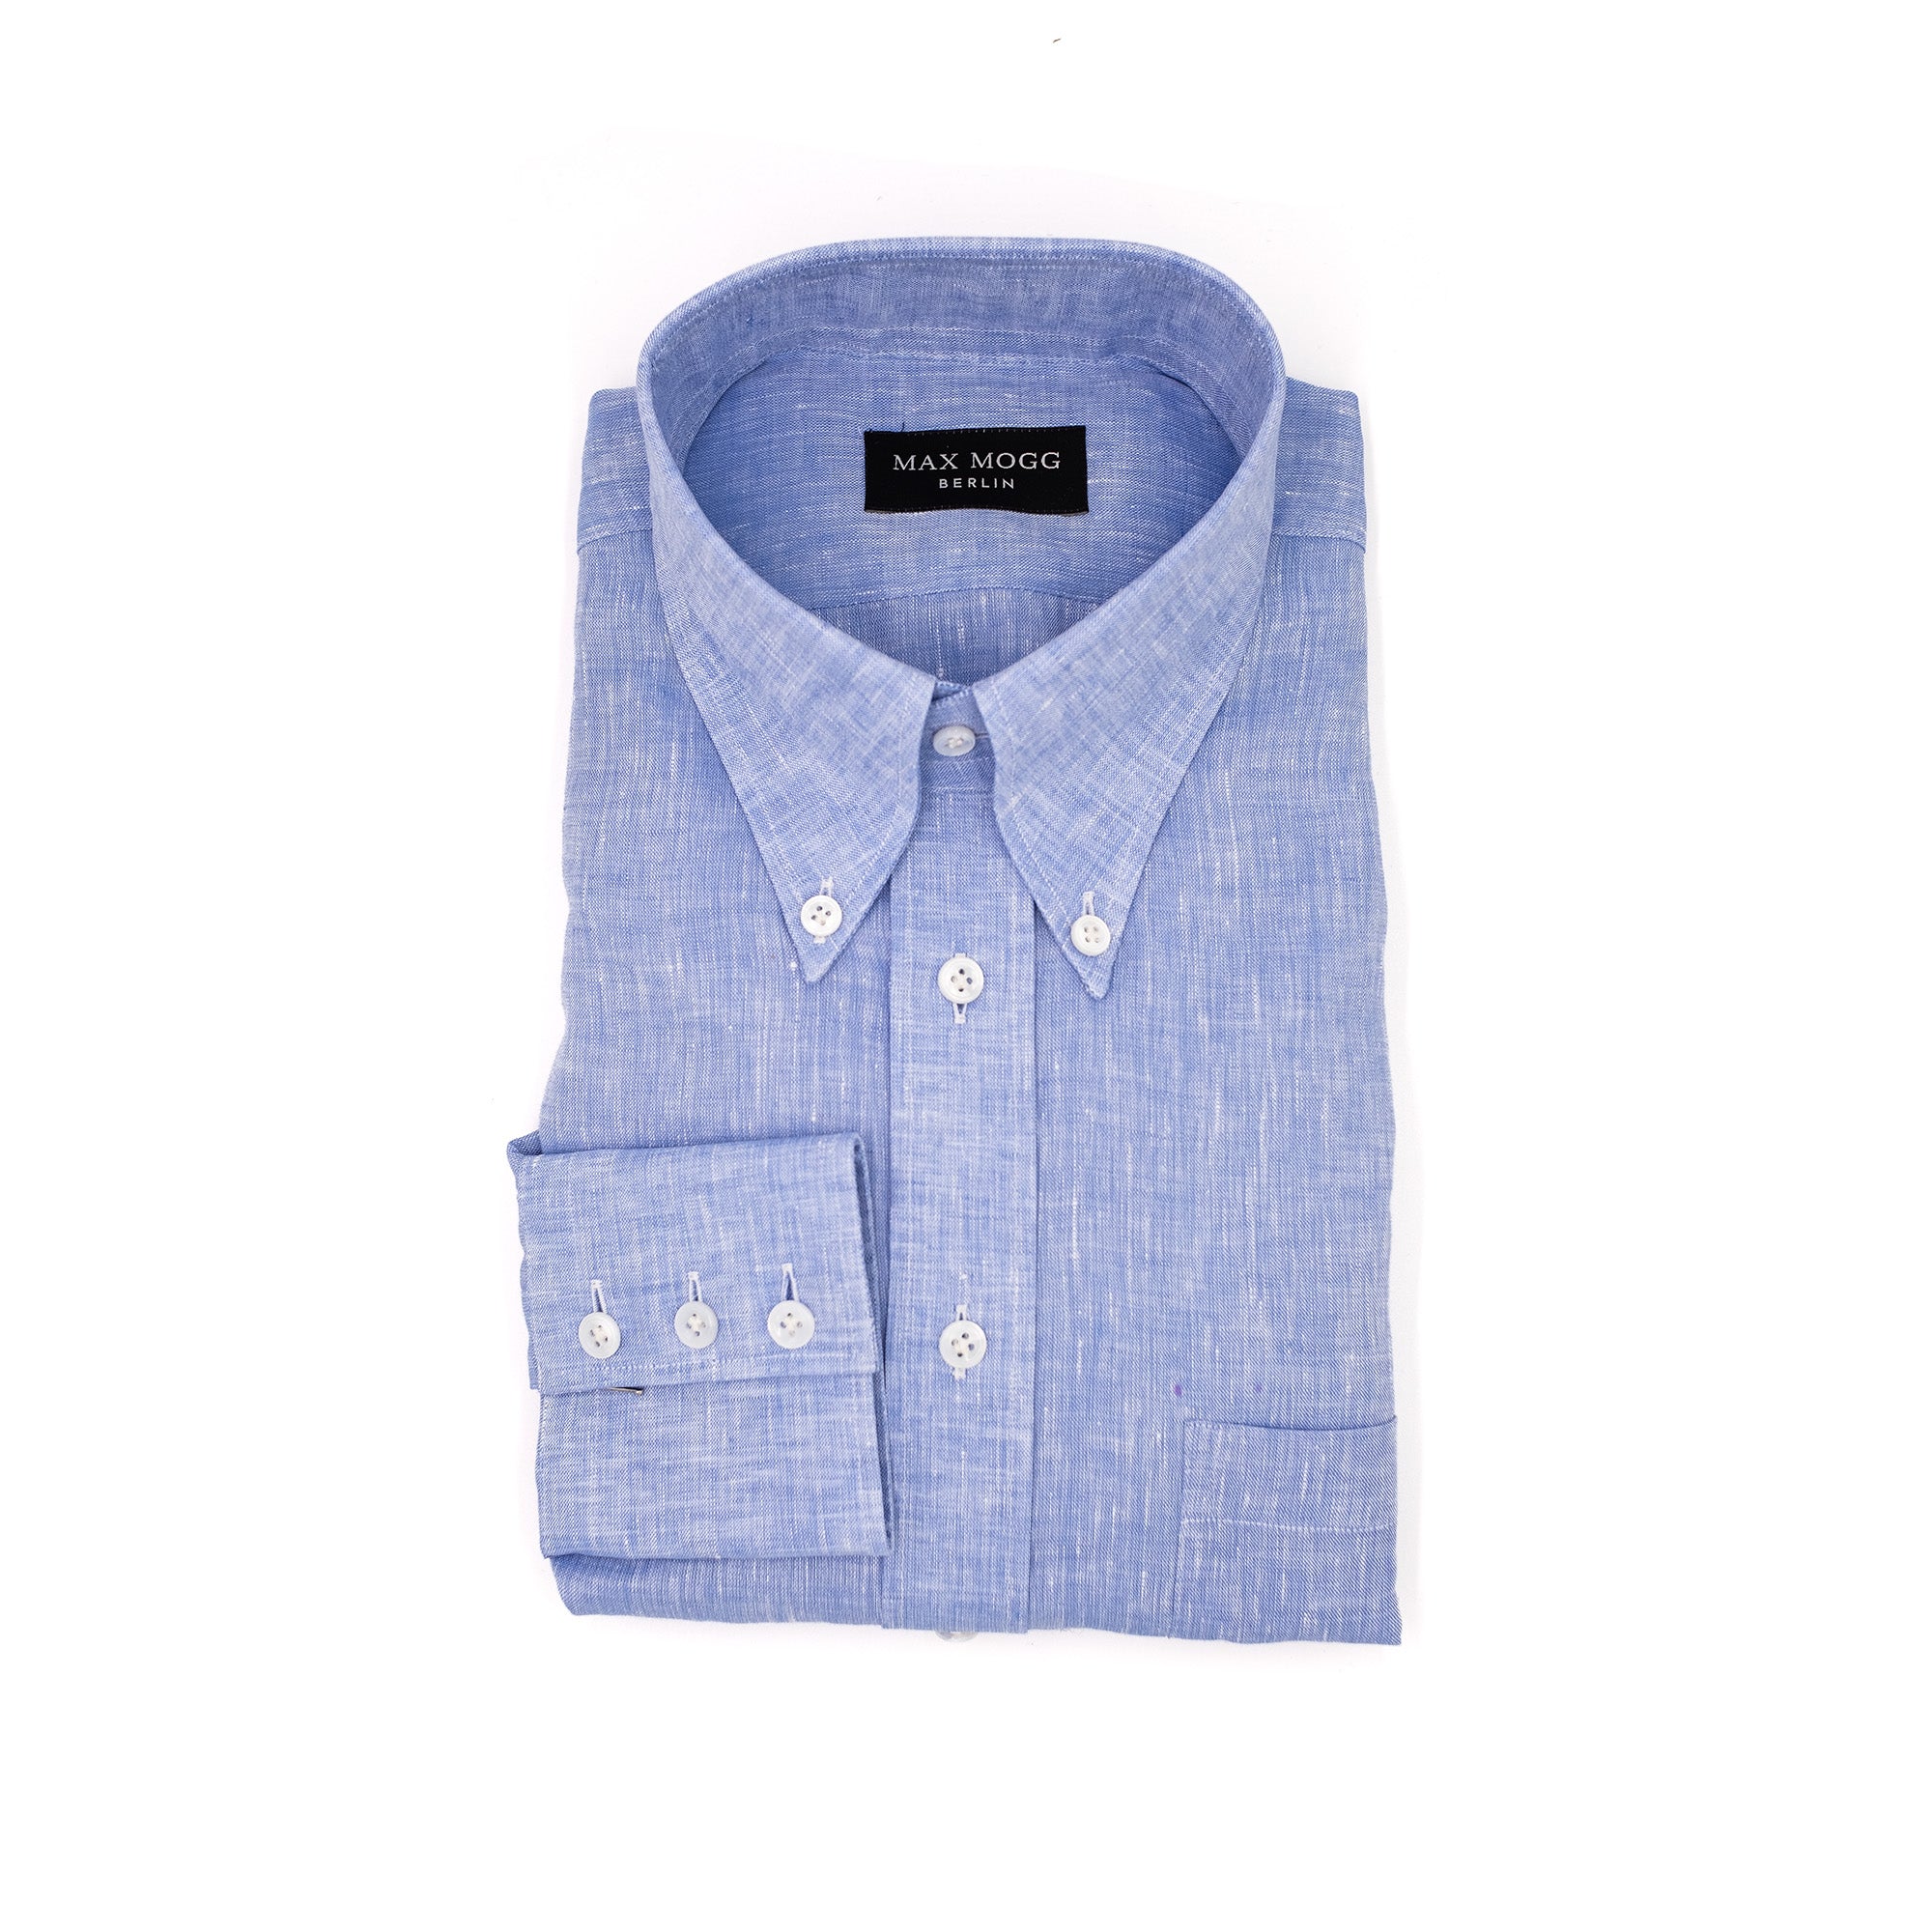 Shirt - Light blue linen button-down